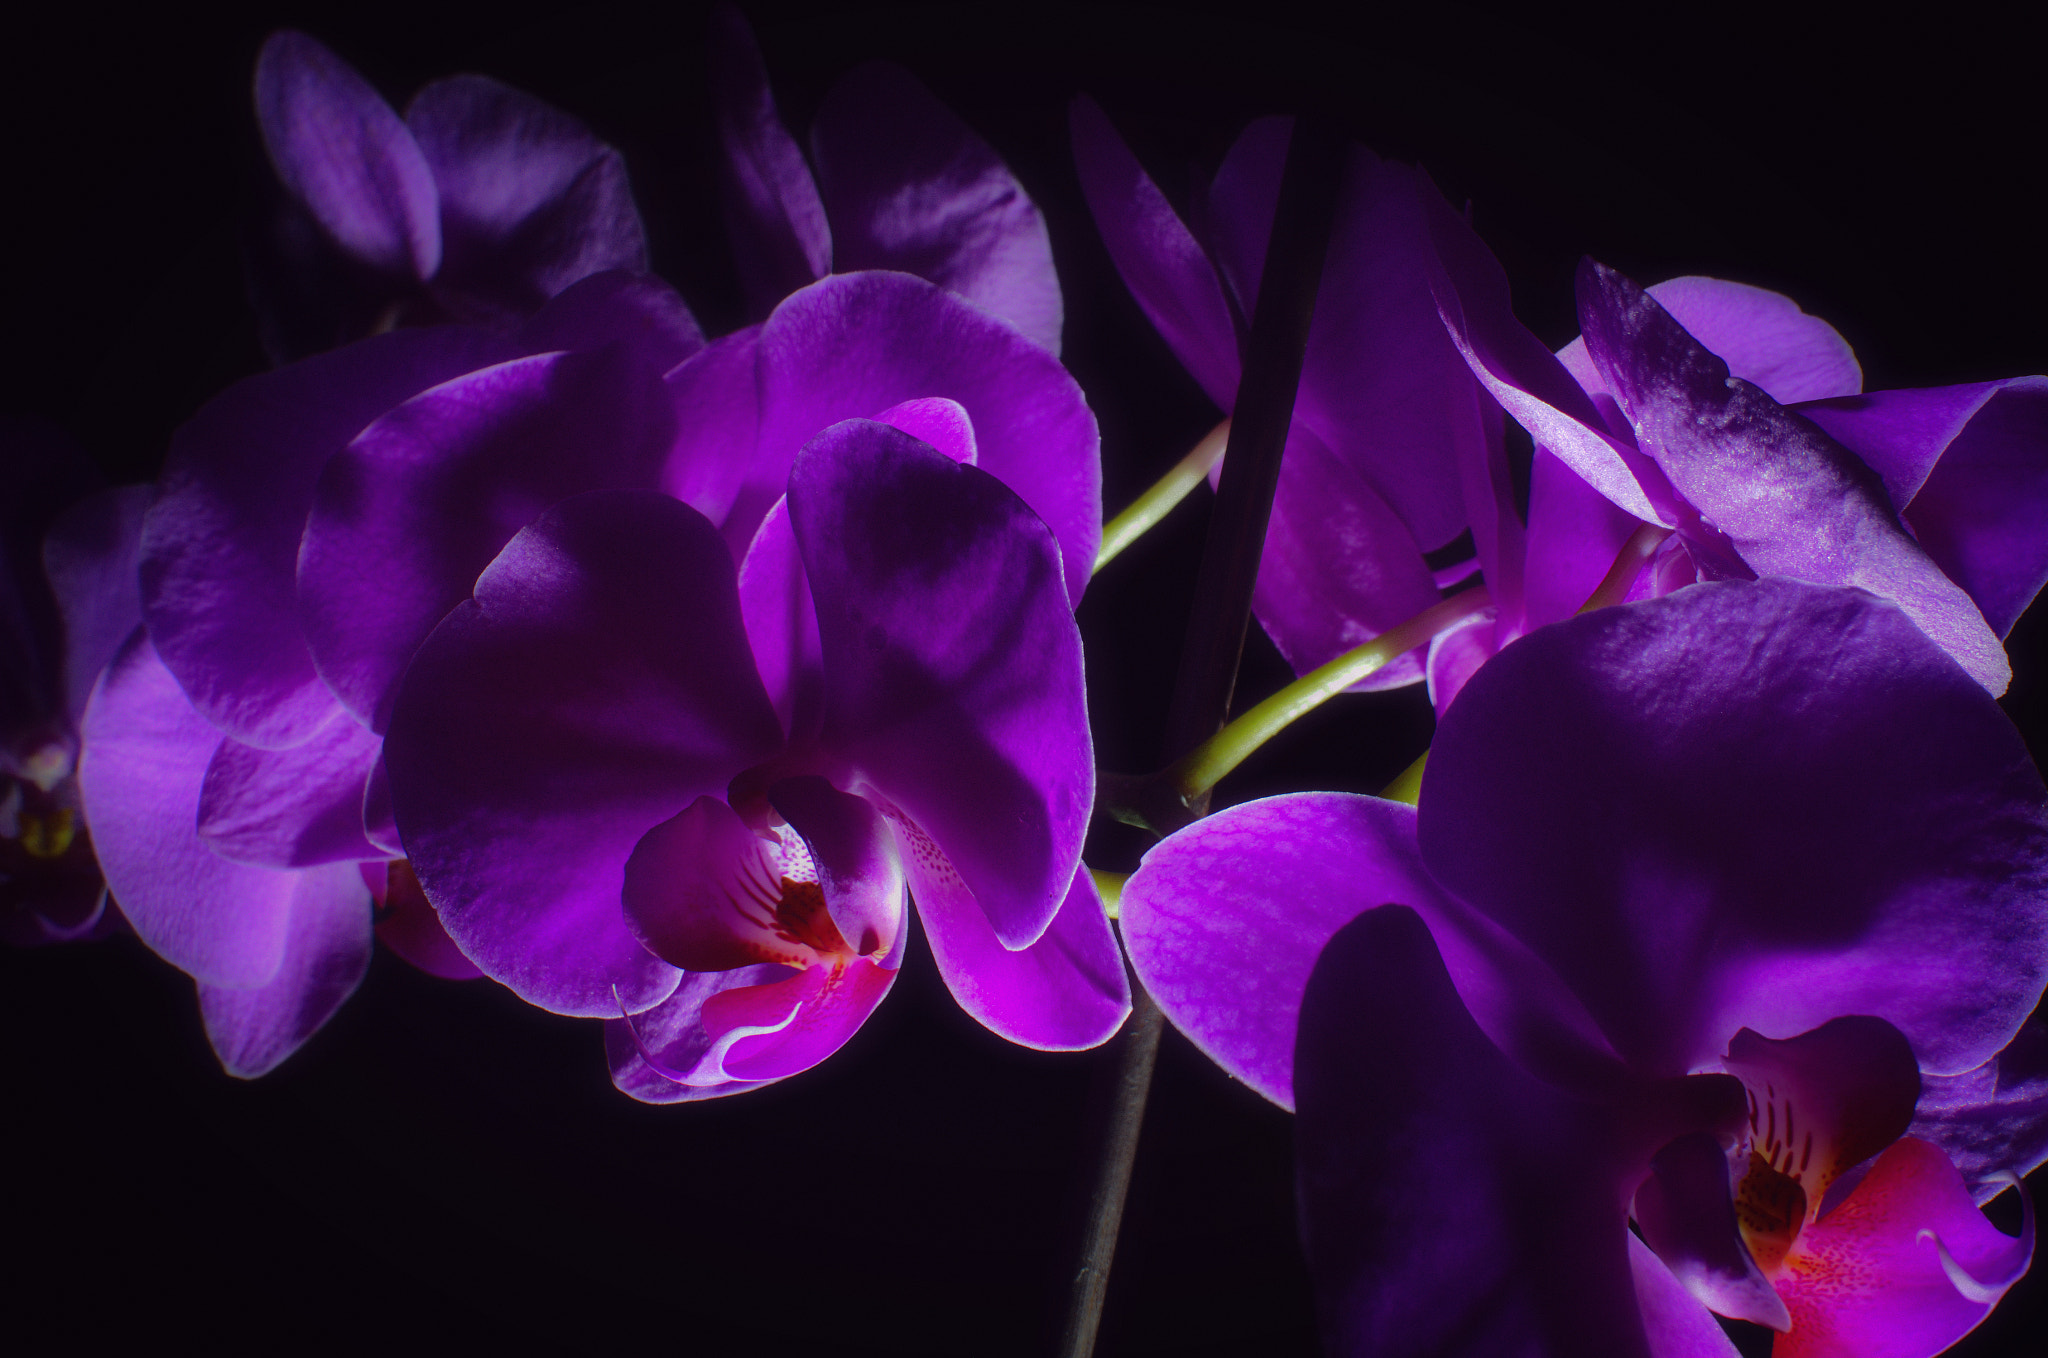 Nikon D7000 + AF-S Nikkor 35mm f/1.8G sample photo. Orchid-2.backlight photography